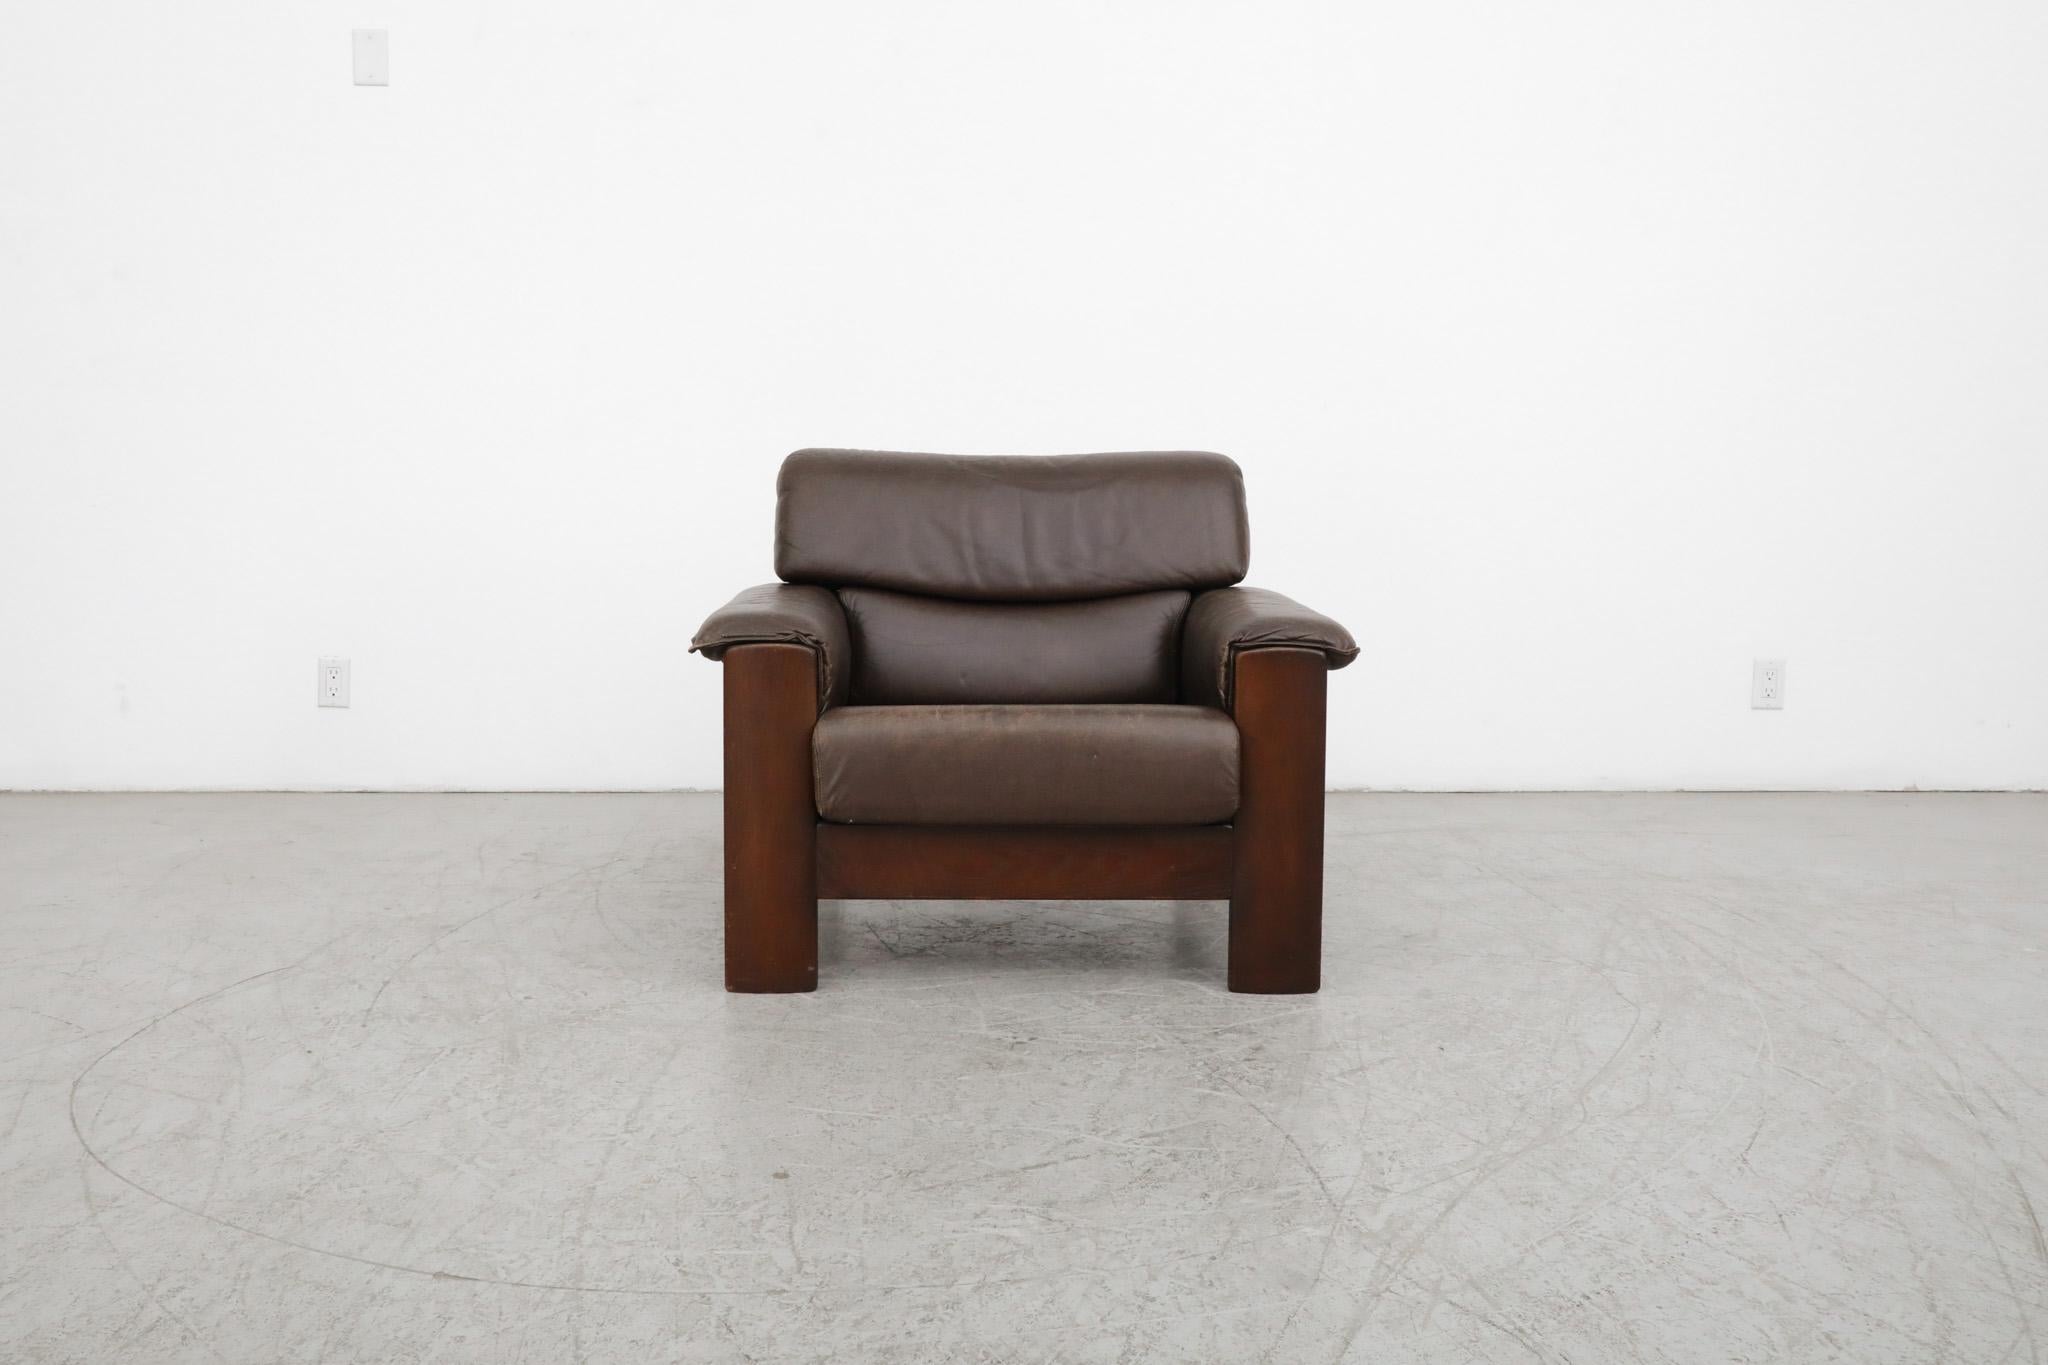 Schöner Mid-Century Leolux Lounge-Sessel mit attraktivem, dunkel gebeiztem Eichenholzrahmen und warmem, dunkelbraunem Leder. Klassisches Design mit großzügigen Lederarmlehnen und Holzlattenrost. Im ursprünglichen Zustand mit leichter Patina und